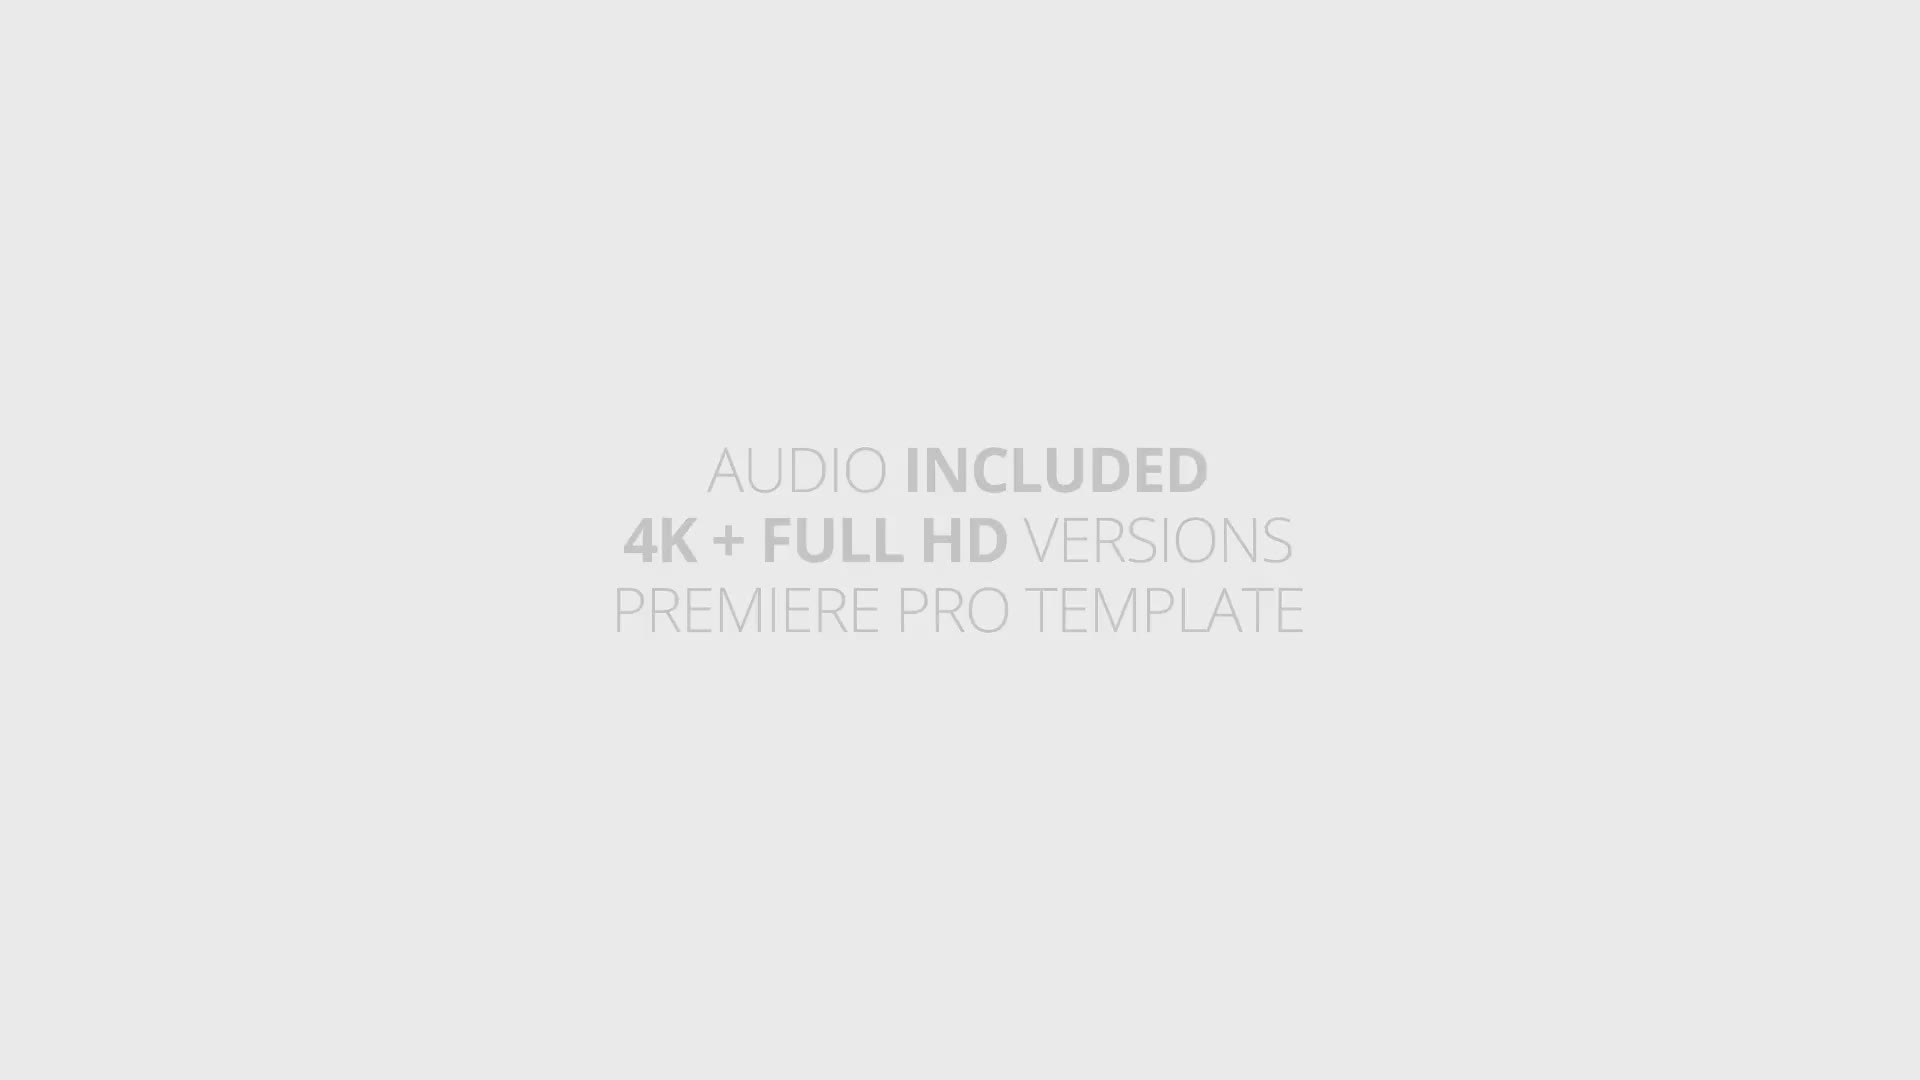 Search Logo Reveal | For Premiere Pro Videohive 25947757 Premiere Pro Image 1